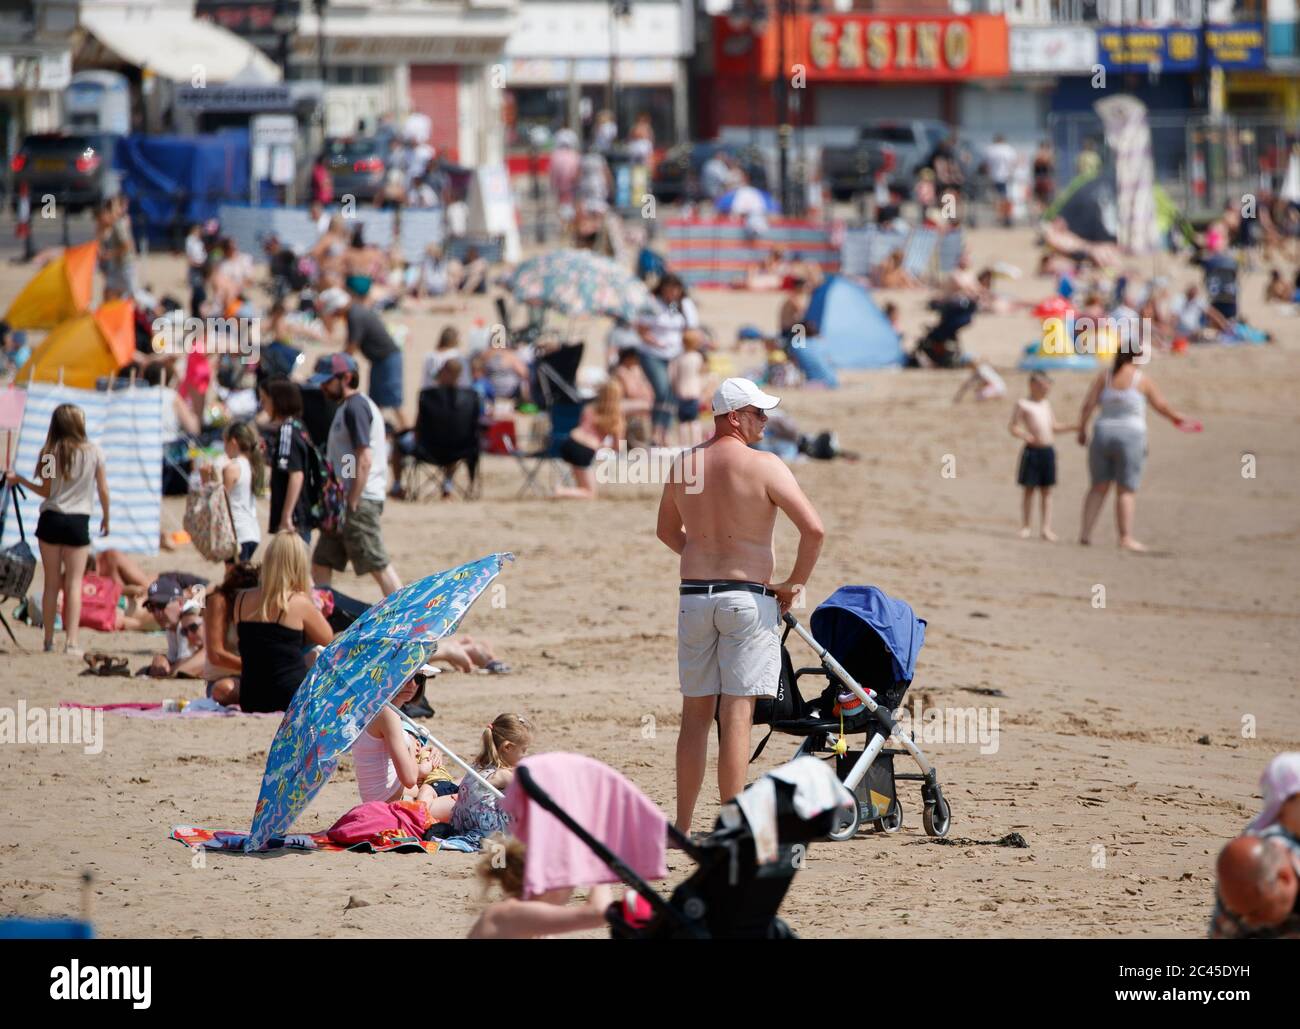 La gente gode il tempo soleggiato a Scarborough come la Gran Bretagna è braced per un'onda di calore di giugno con le temperature destinate a salire verso la metà degli anni 30 questa settimana. Foto Stock